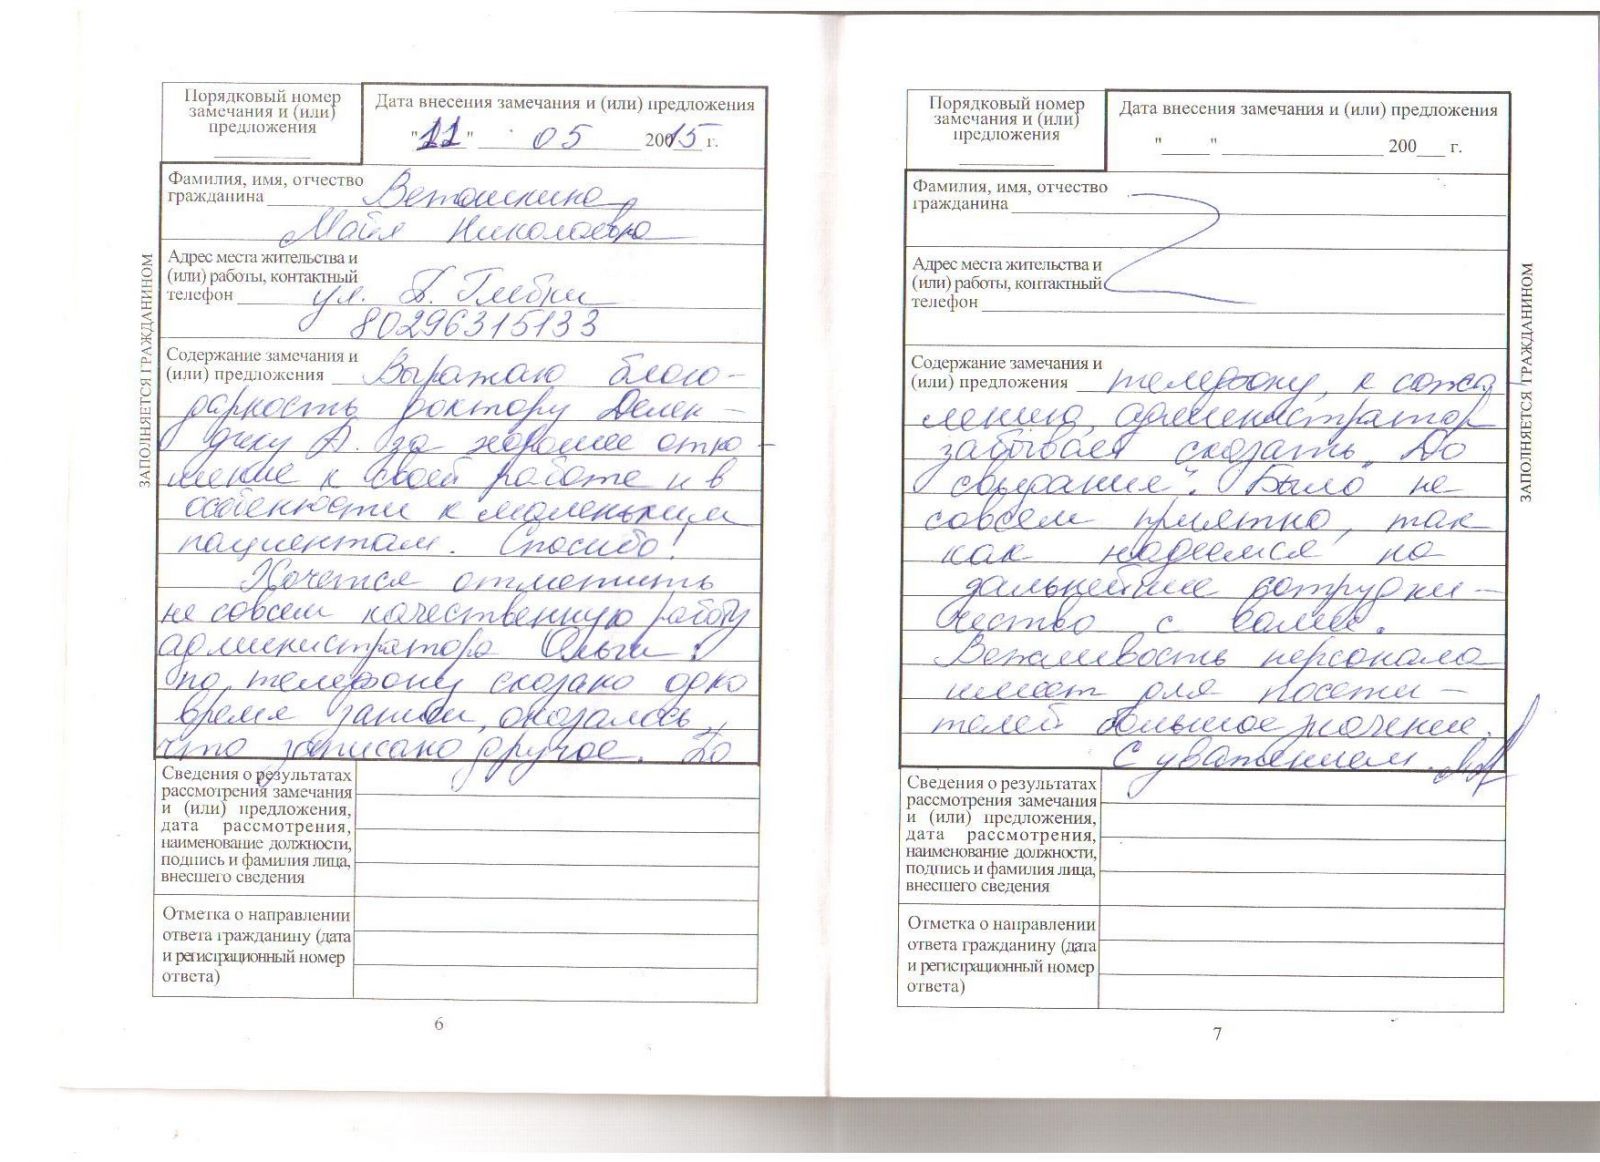 Отбеливание зубов офисное отзывы клиентов о стоматологии, Минск 